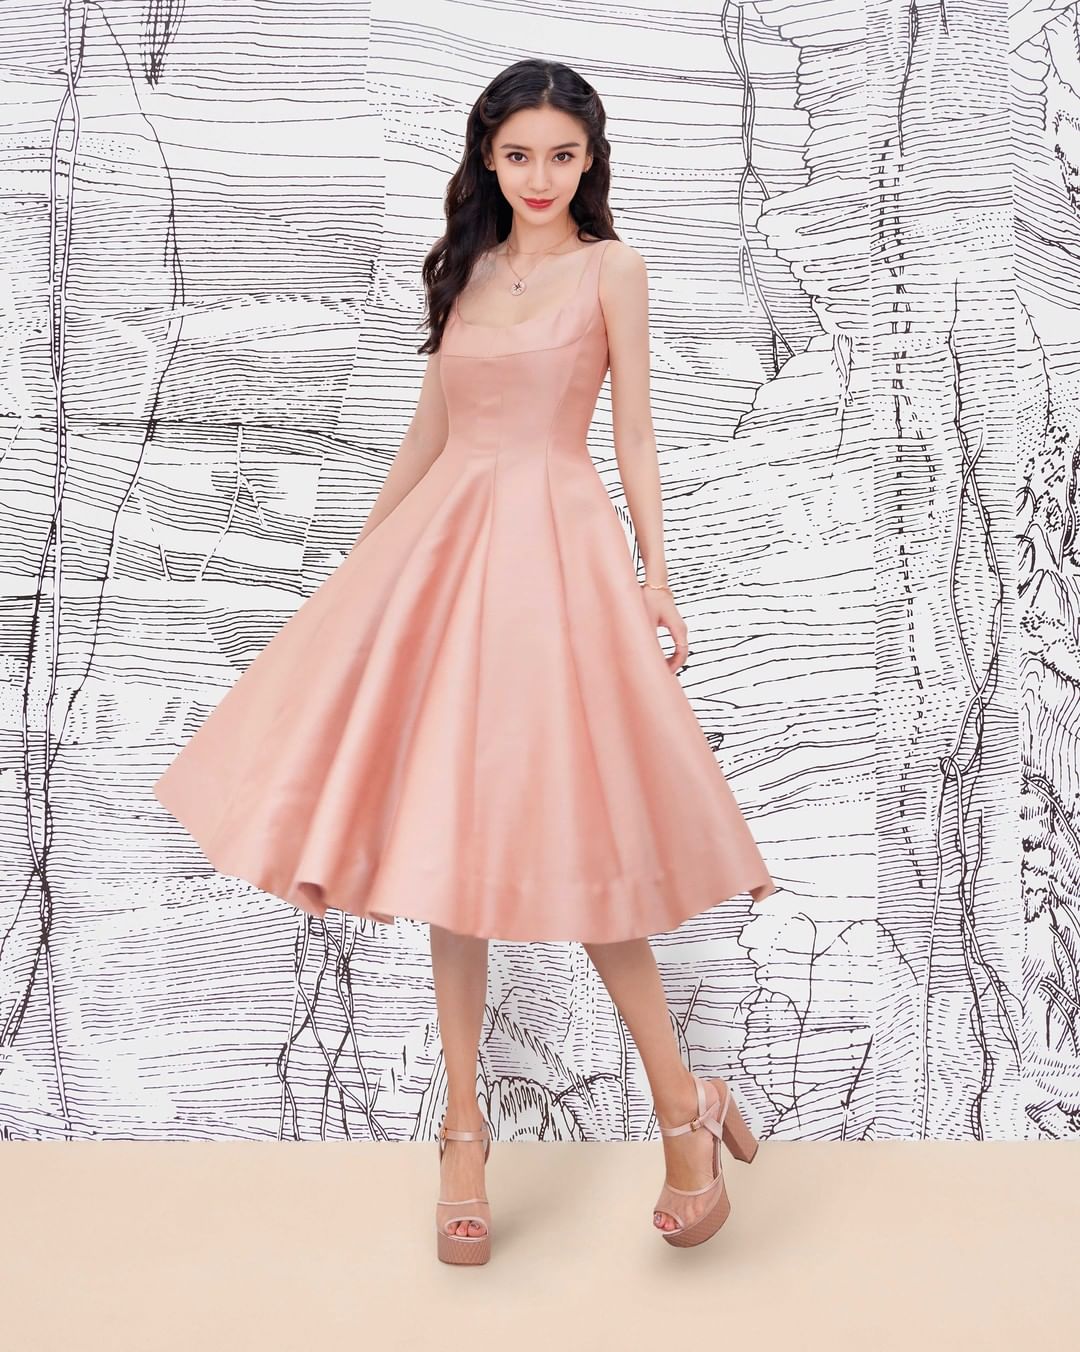 إطلالة كلاسيكية ساحرة بفستان منفوش من ديور- الصورة من انستغرام Christian Dior